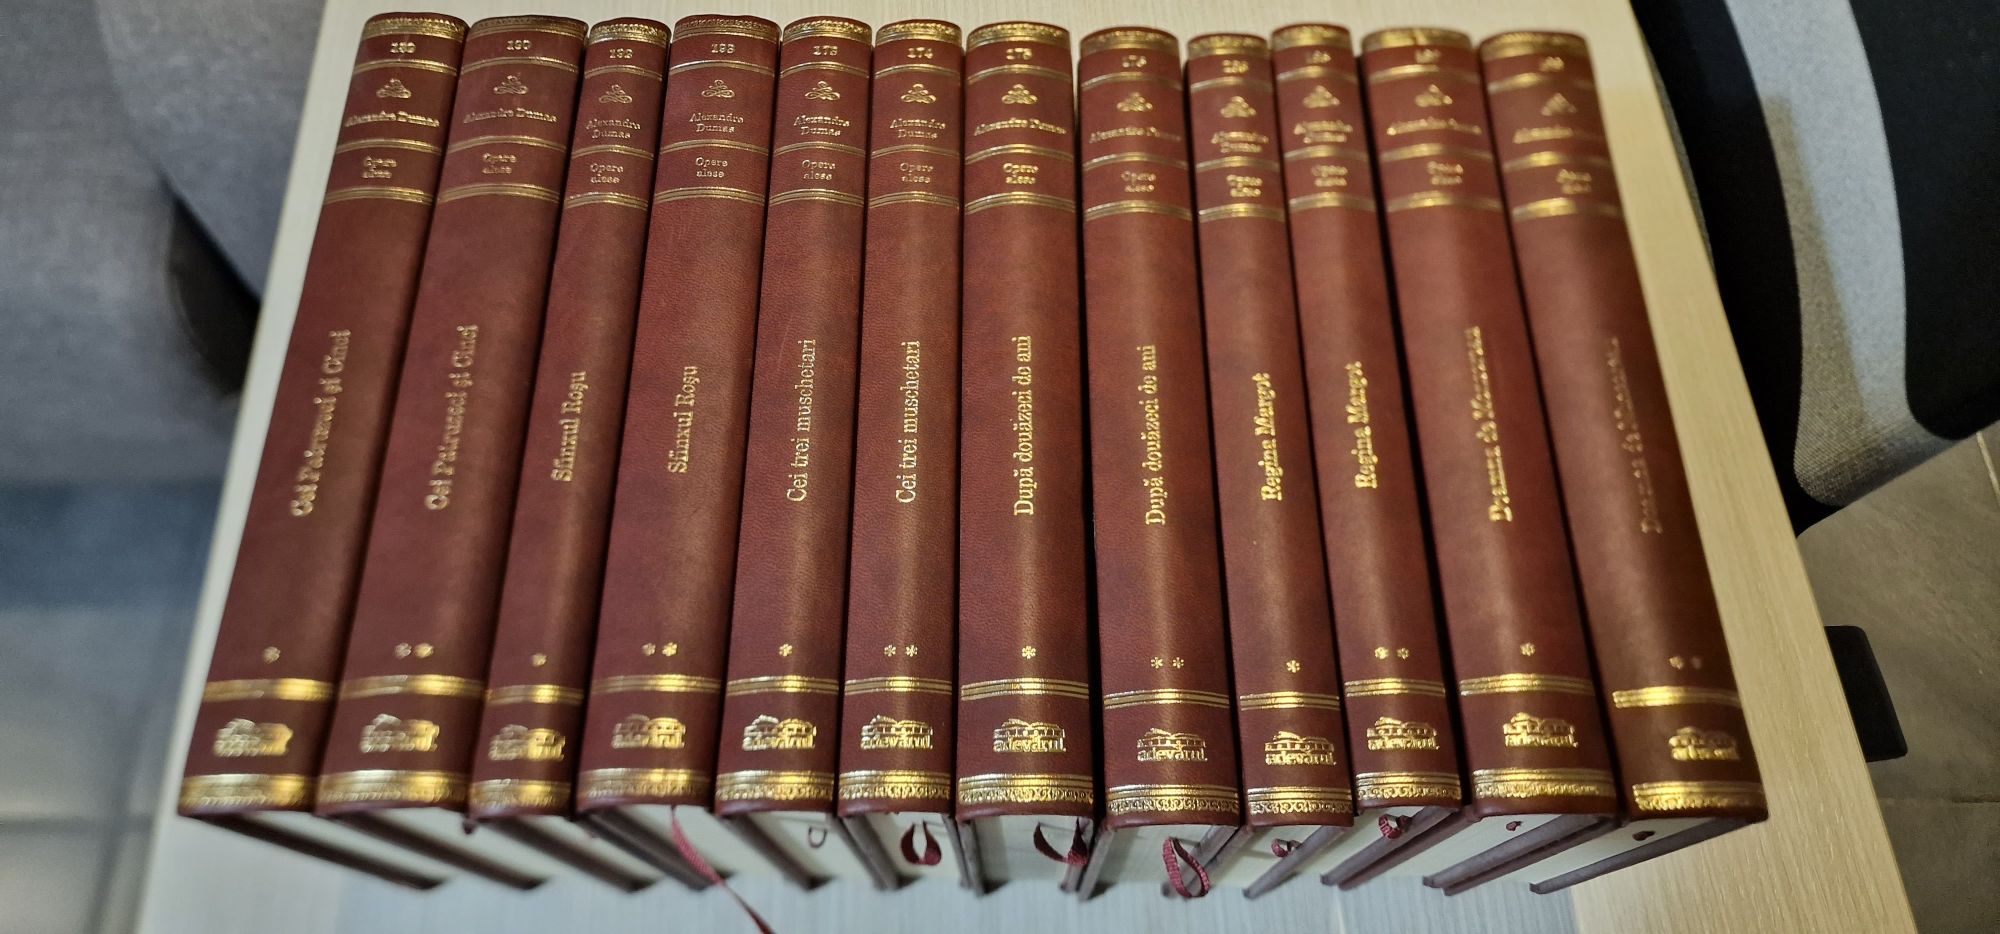 Colectie Alexandre Dumas (Adevarul de Lux) in stare impecabila